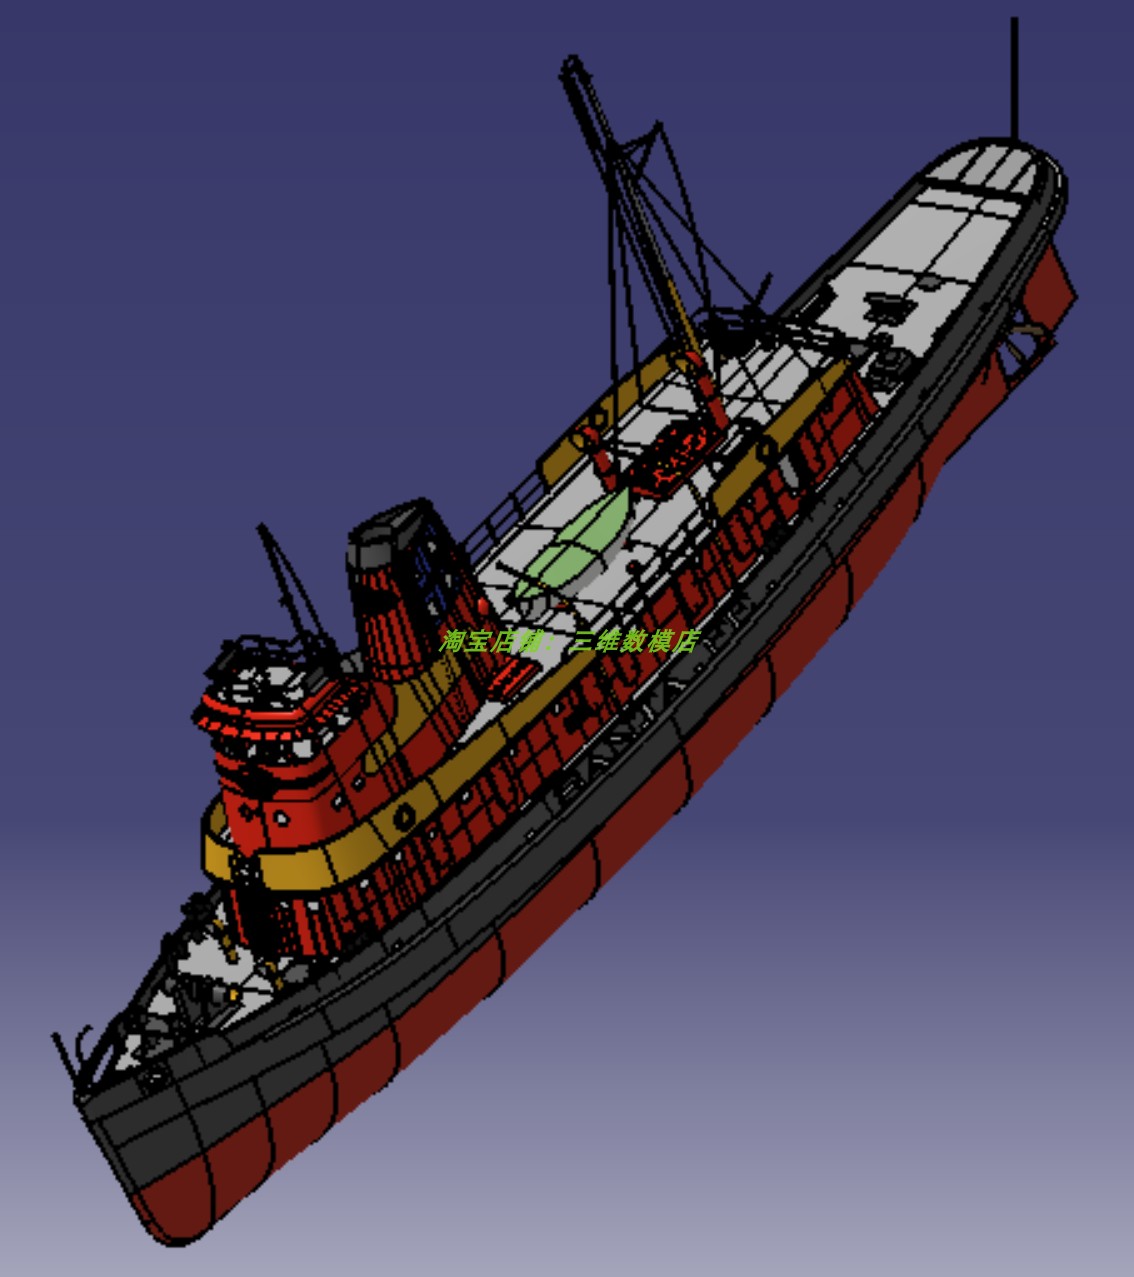 45米m多层大型航海货船舶轮船3D三维几何数模型远洋商船曲面渔船